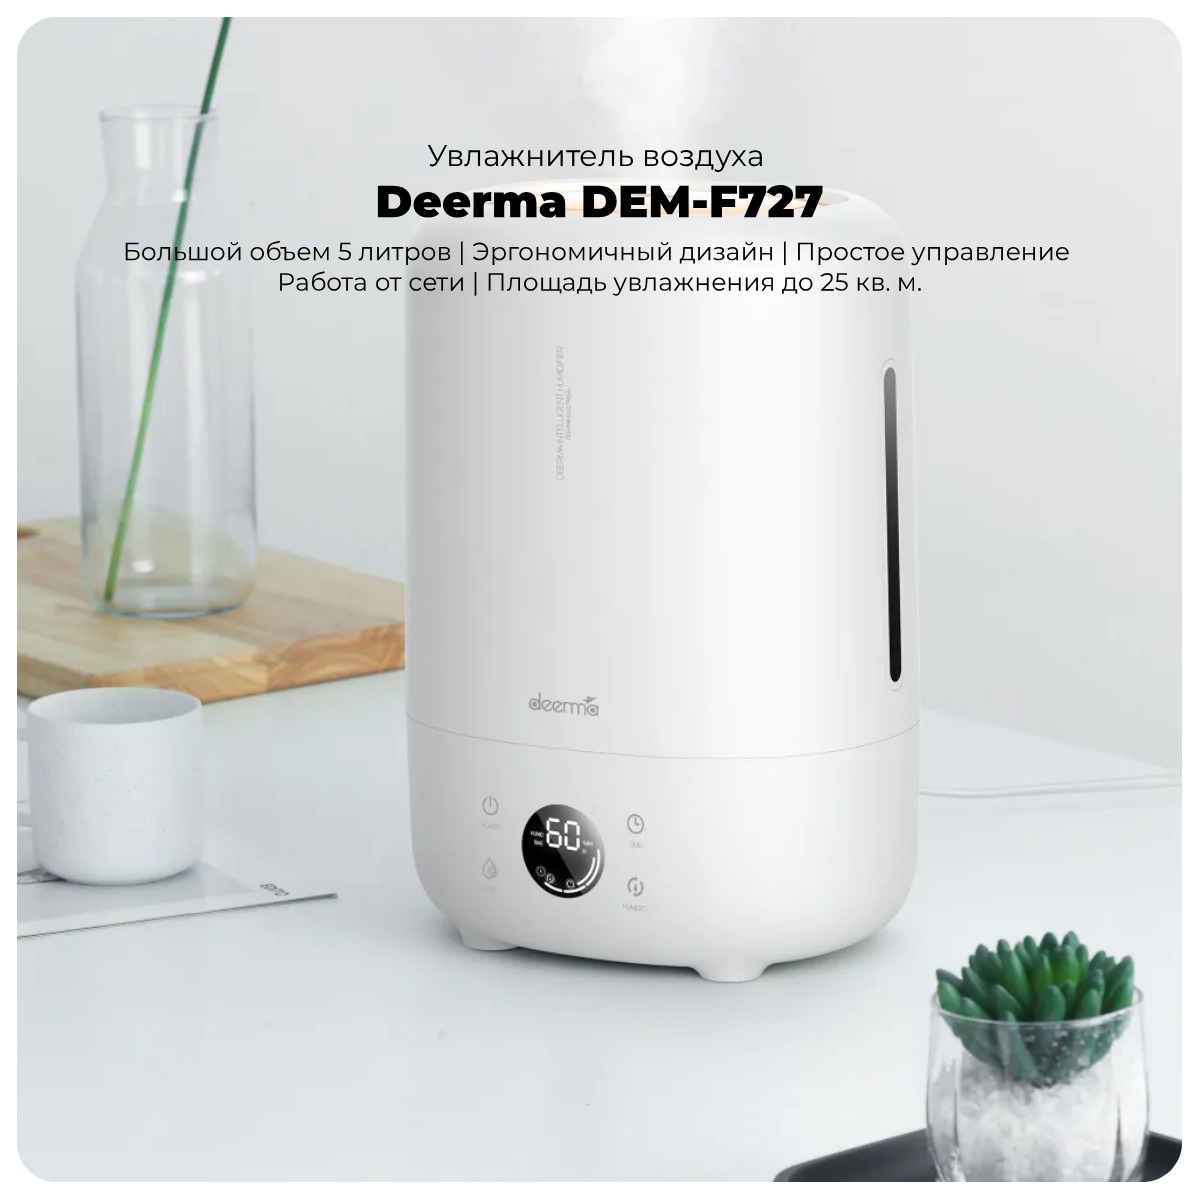 Deerma-DEM-F727-01